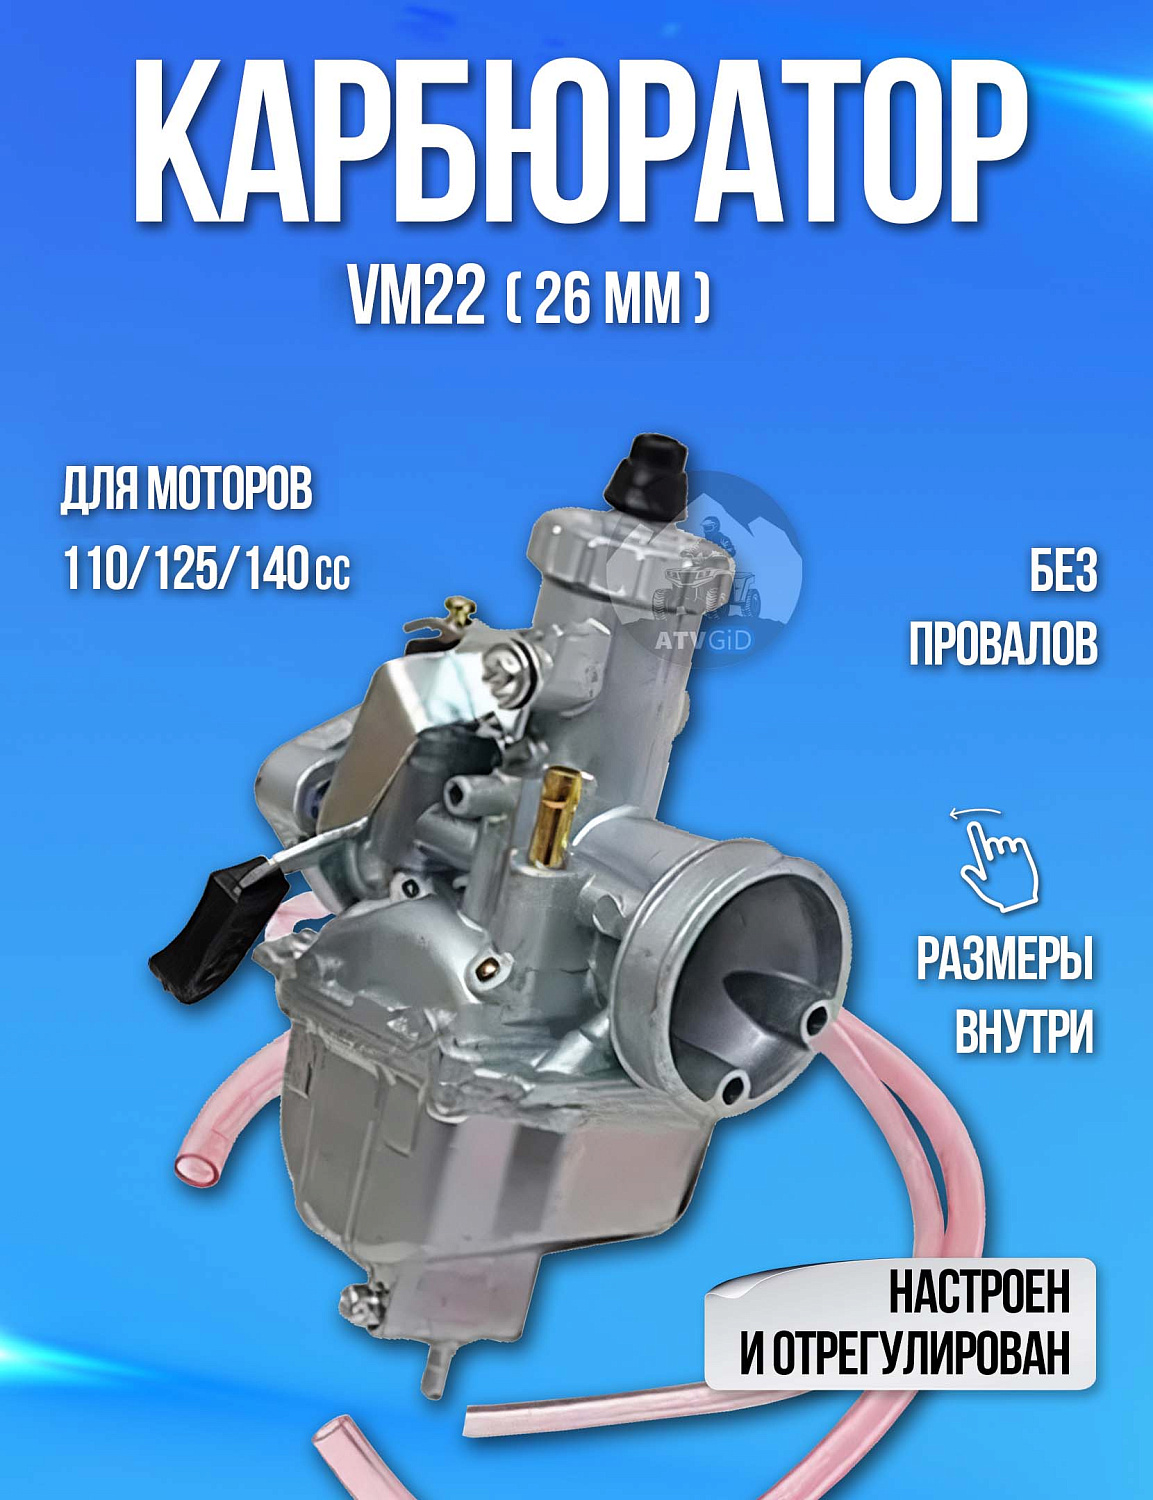 Карбюратор VM22 (26мм) для 110cc 125cc 140cc универсальный